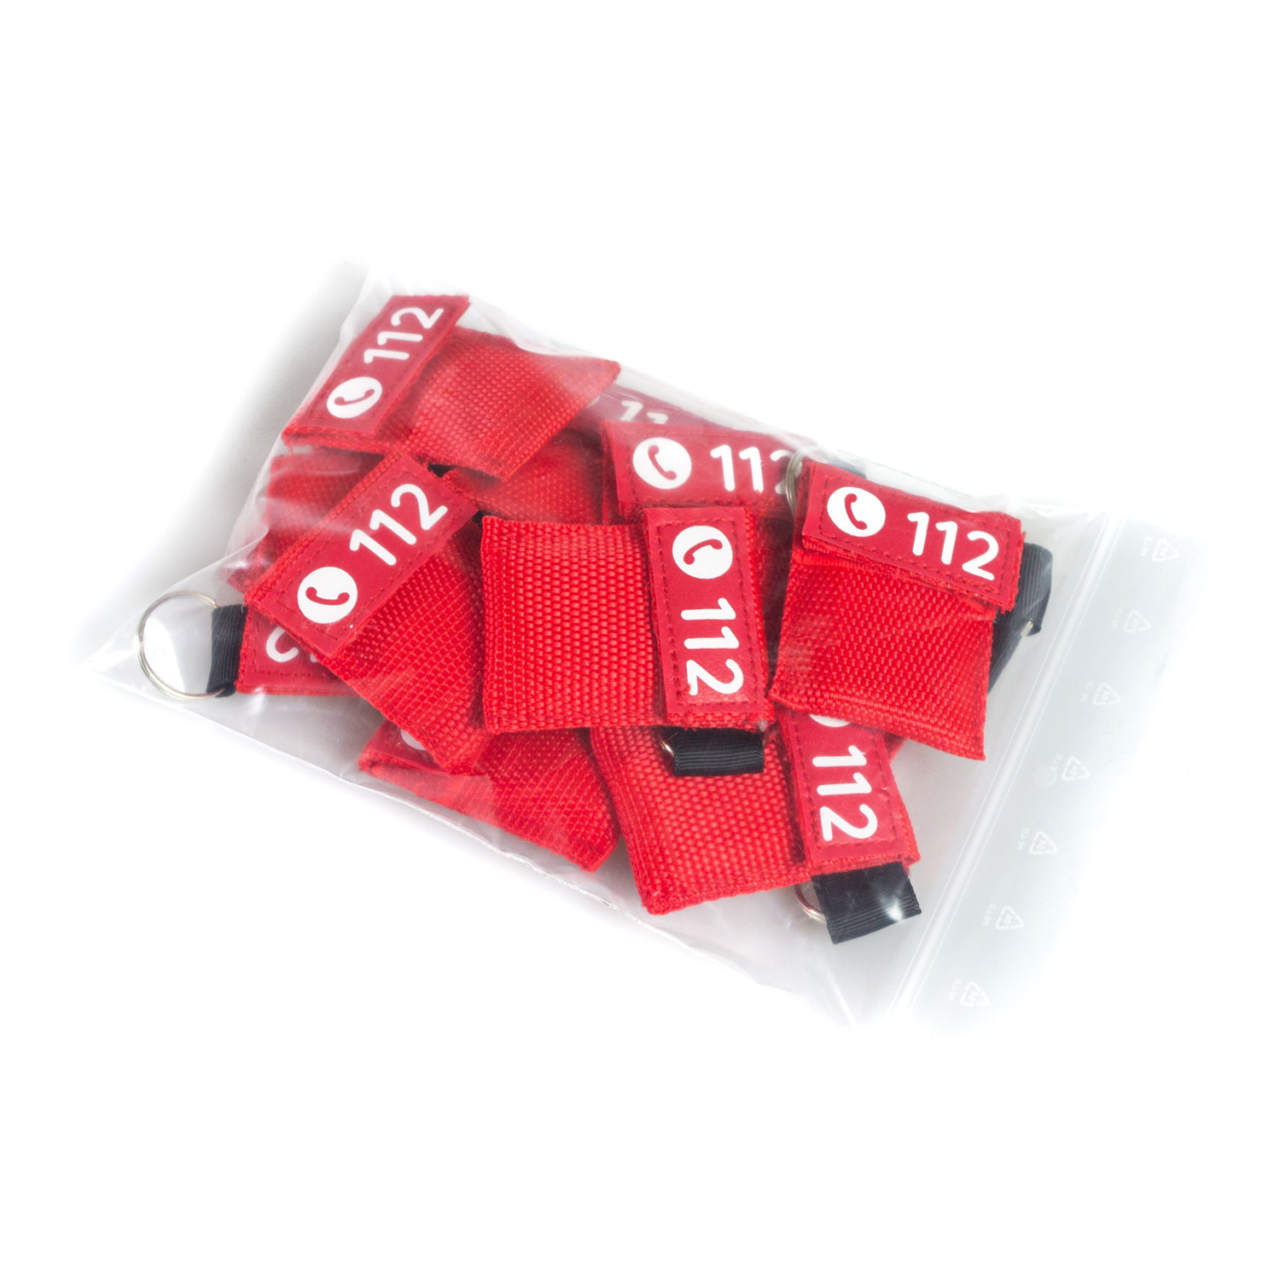 12x Beatmungsmaske Schlüsselanhänger DIN 13154, rot oder schwarz, FLEXEO, CPR Maske, Mund zu Mund Beatmungsschutz, Beatmungstuch, Reanimationsschutz